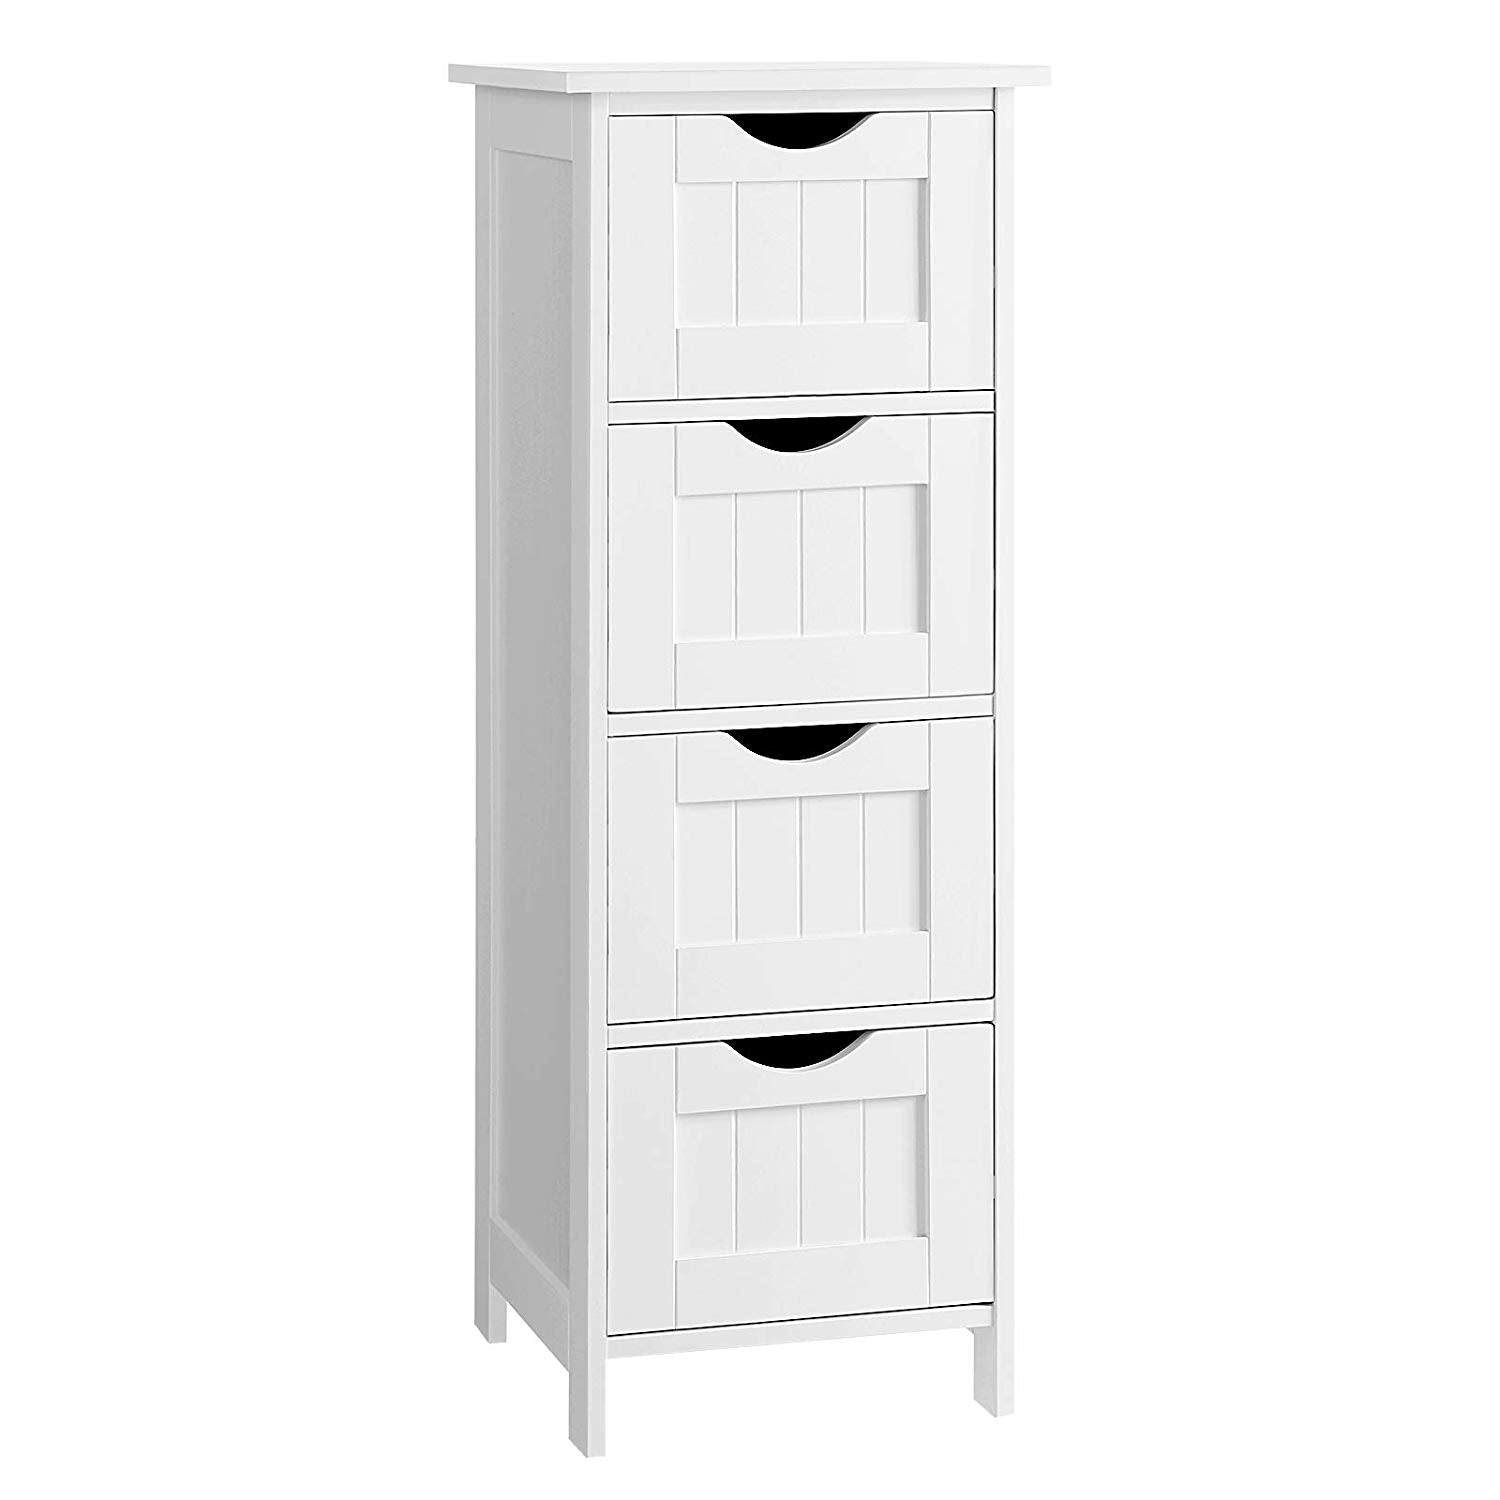 White Bathroom Storage Cabinet with Drawers - Demine Essentials